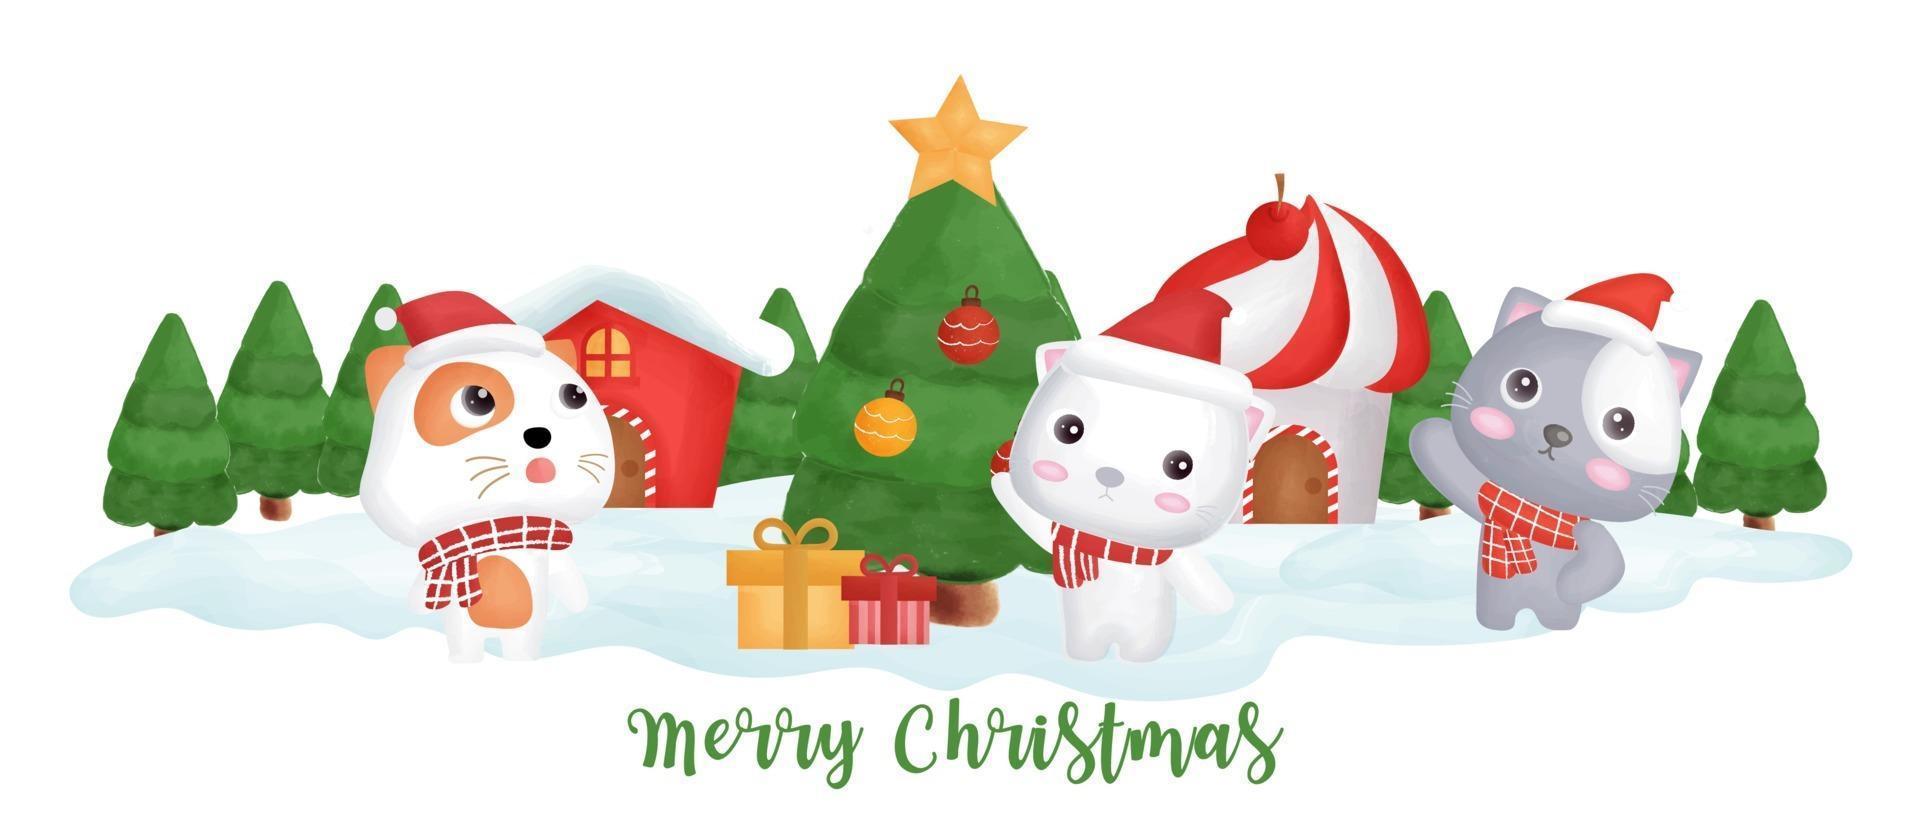 pancarta del día de navidad con lindos gatos en la aldea de nieve. vector